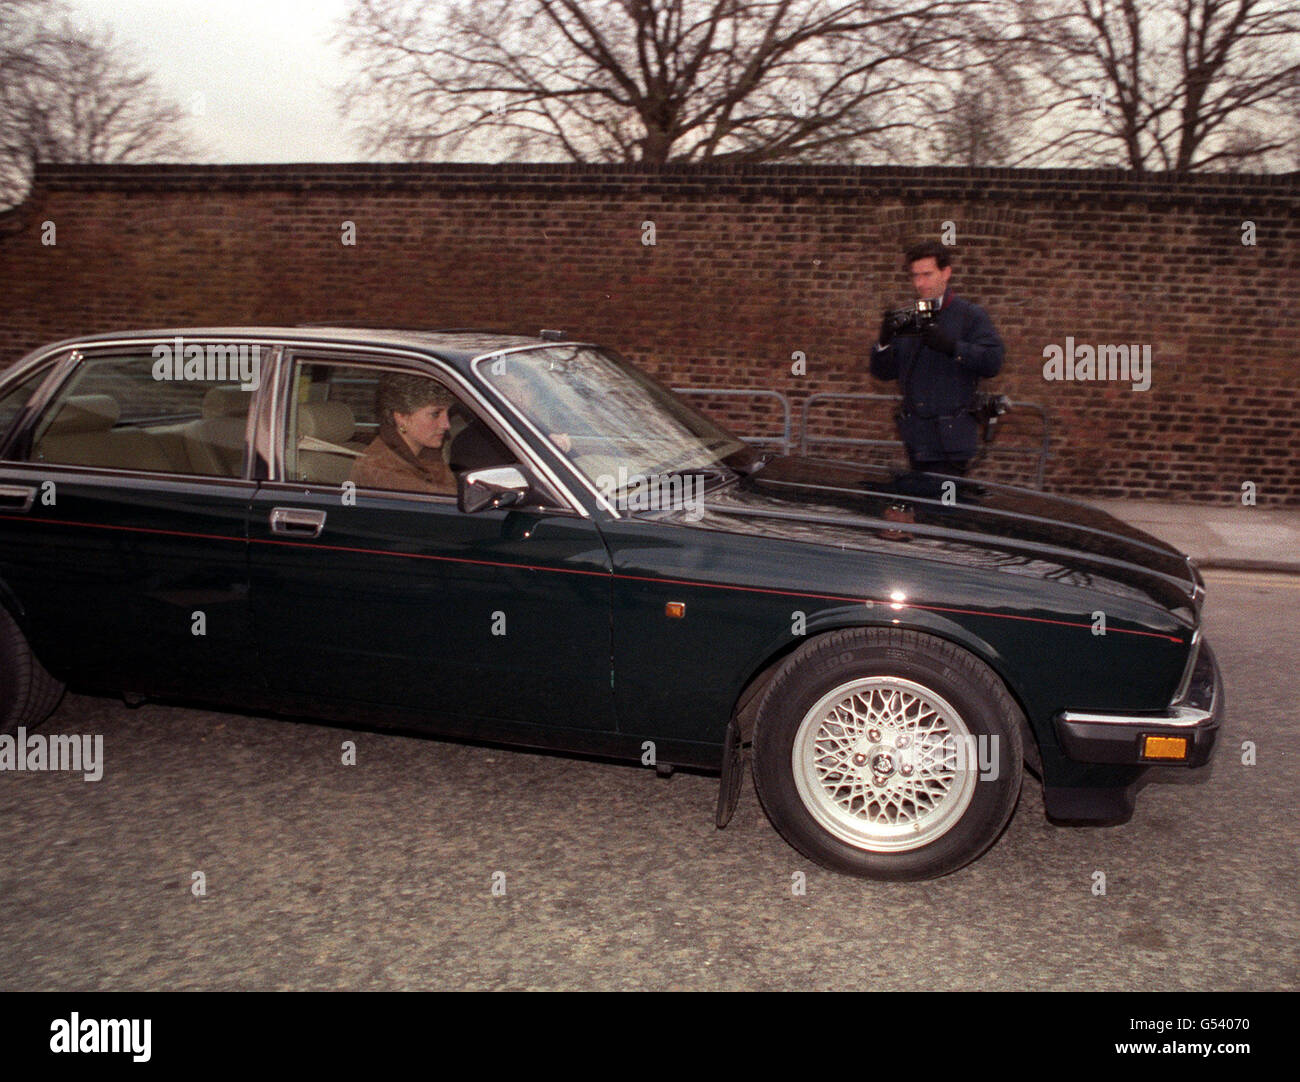 LA JAGUAR DE DIANA : la princesse de Galles quitte Kensington Palace, Londres, dans son Green Jaguar XJ6 Saloon. La princesse a provoqué une rangée politique en louant une Mercedes 500SL, ce qui en fait le premier Royal à choisir une voiture étrangère. Banque D'Images